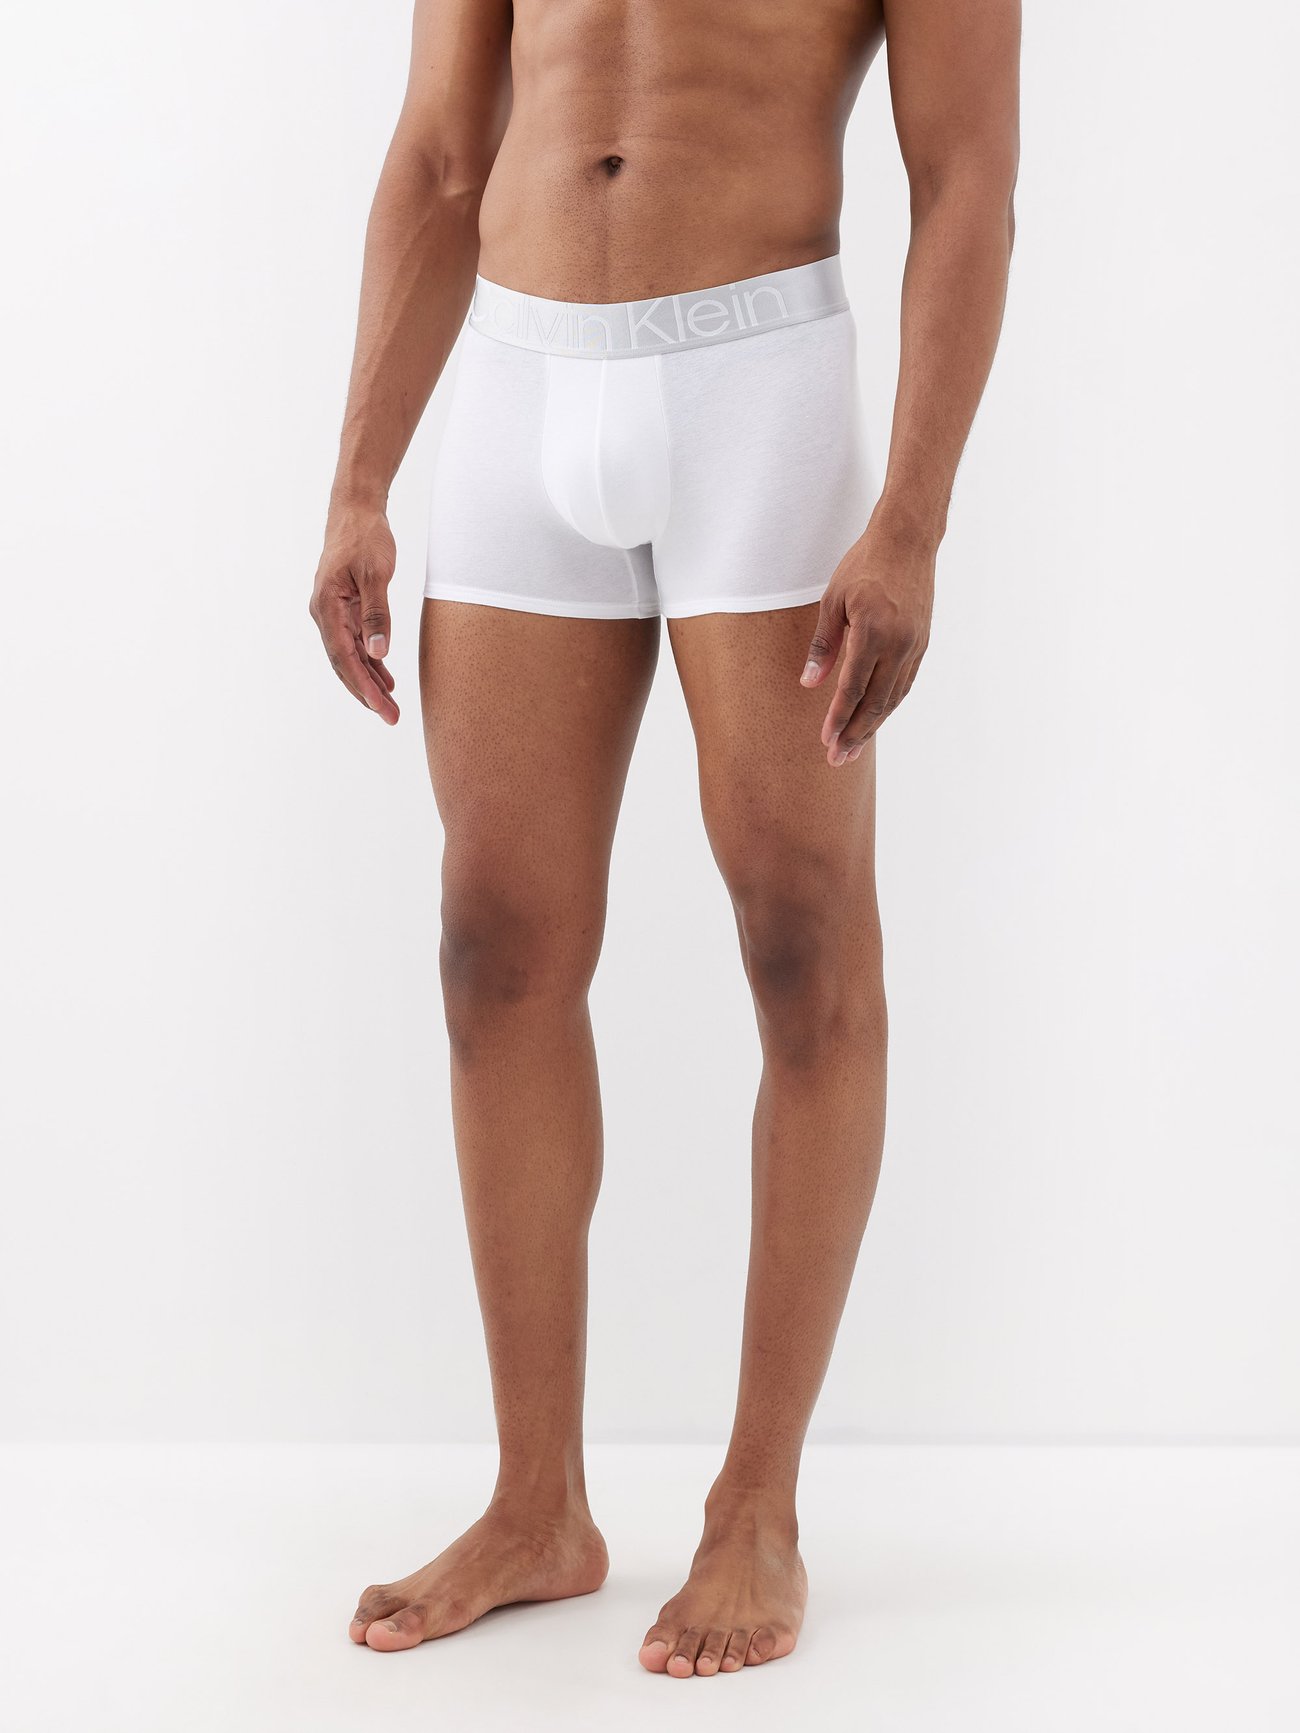 Men's Calvin Klein CK One Plush Single Boxer Brief French Terry Blend  Underwear 